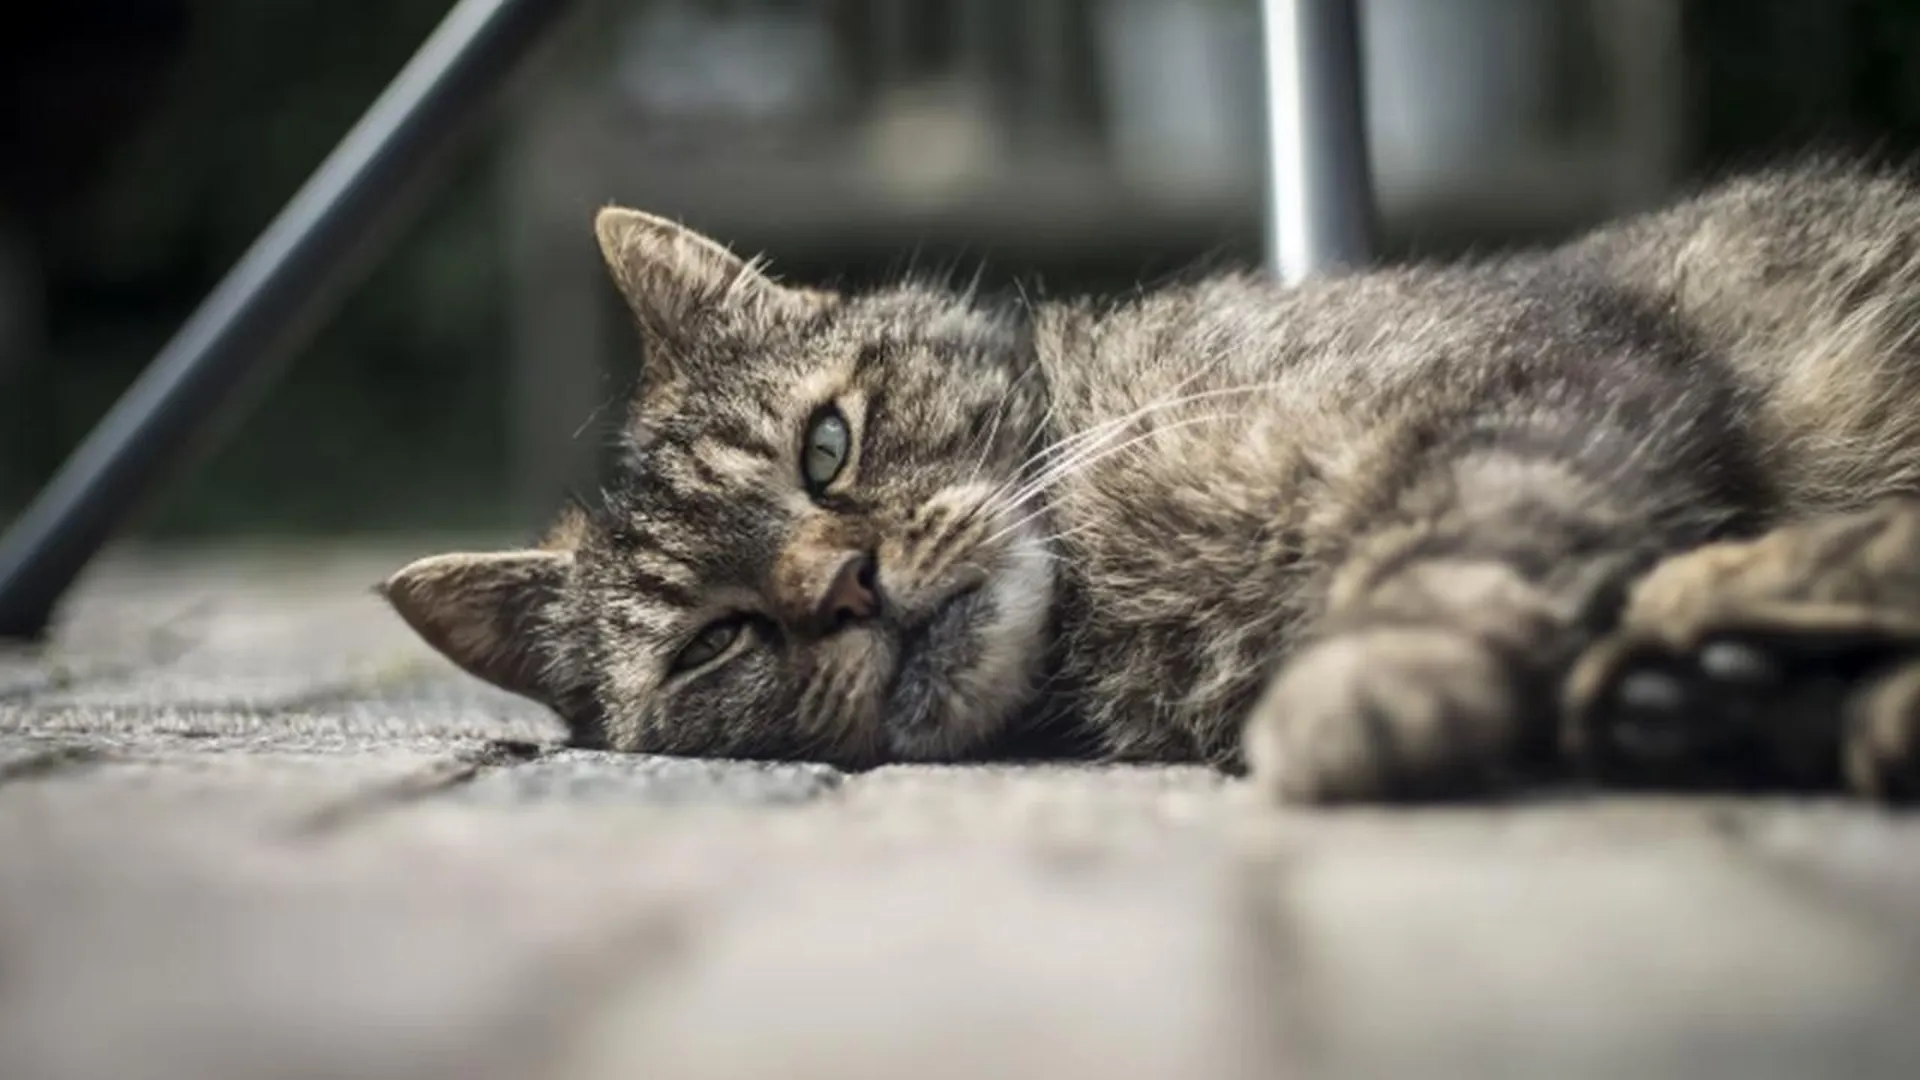 «Это канал маньяка»: в Сети обнаружили видеоролики с мучениями кошек, снятые ради лайков